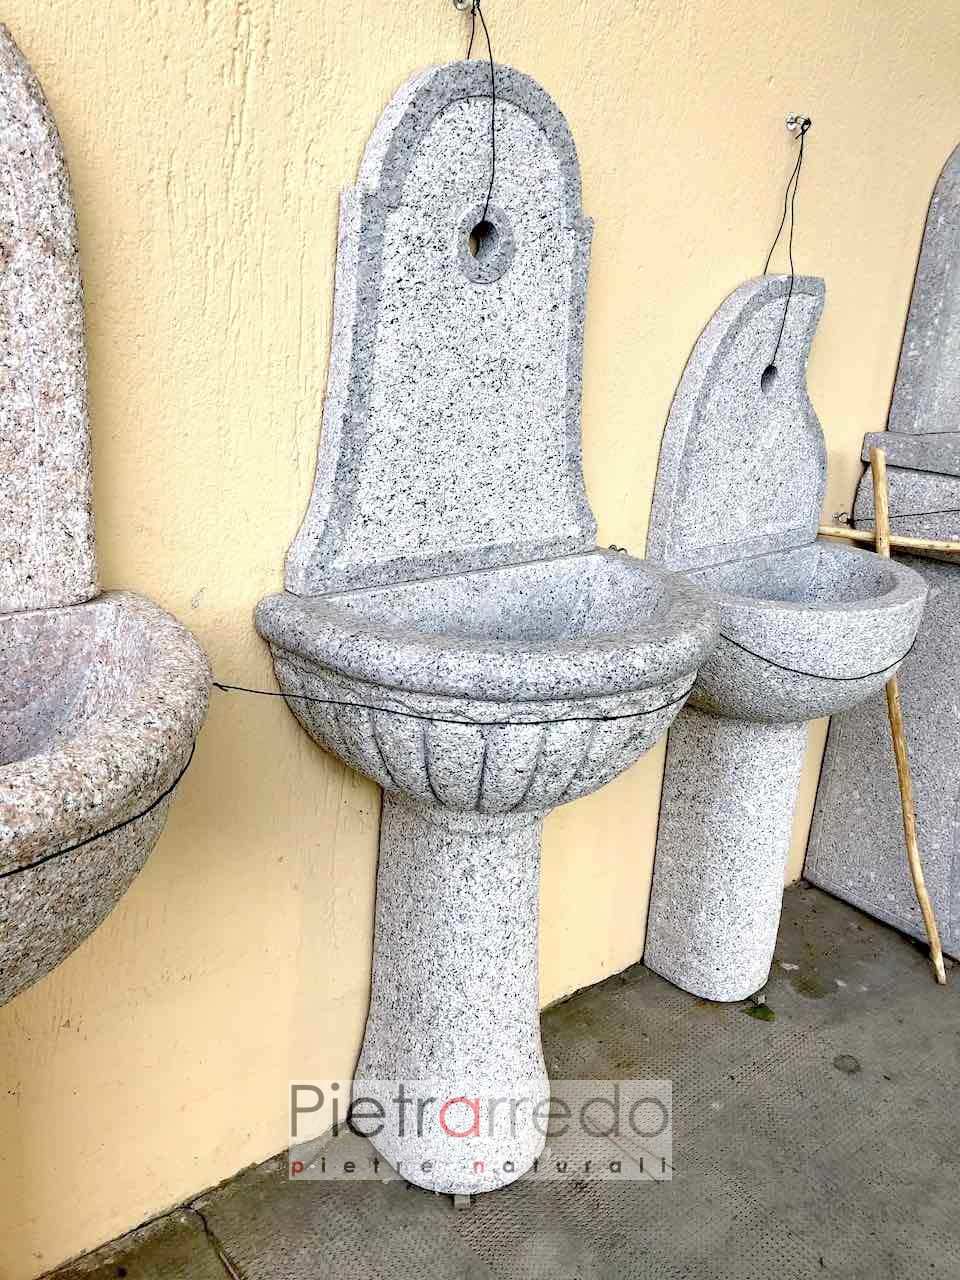 prezzo fontana in granito da muro pietrarredo giada offerta spèedizioni italia fountain